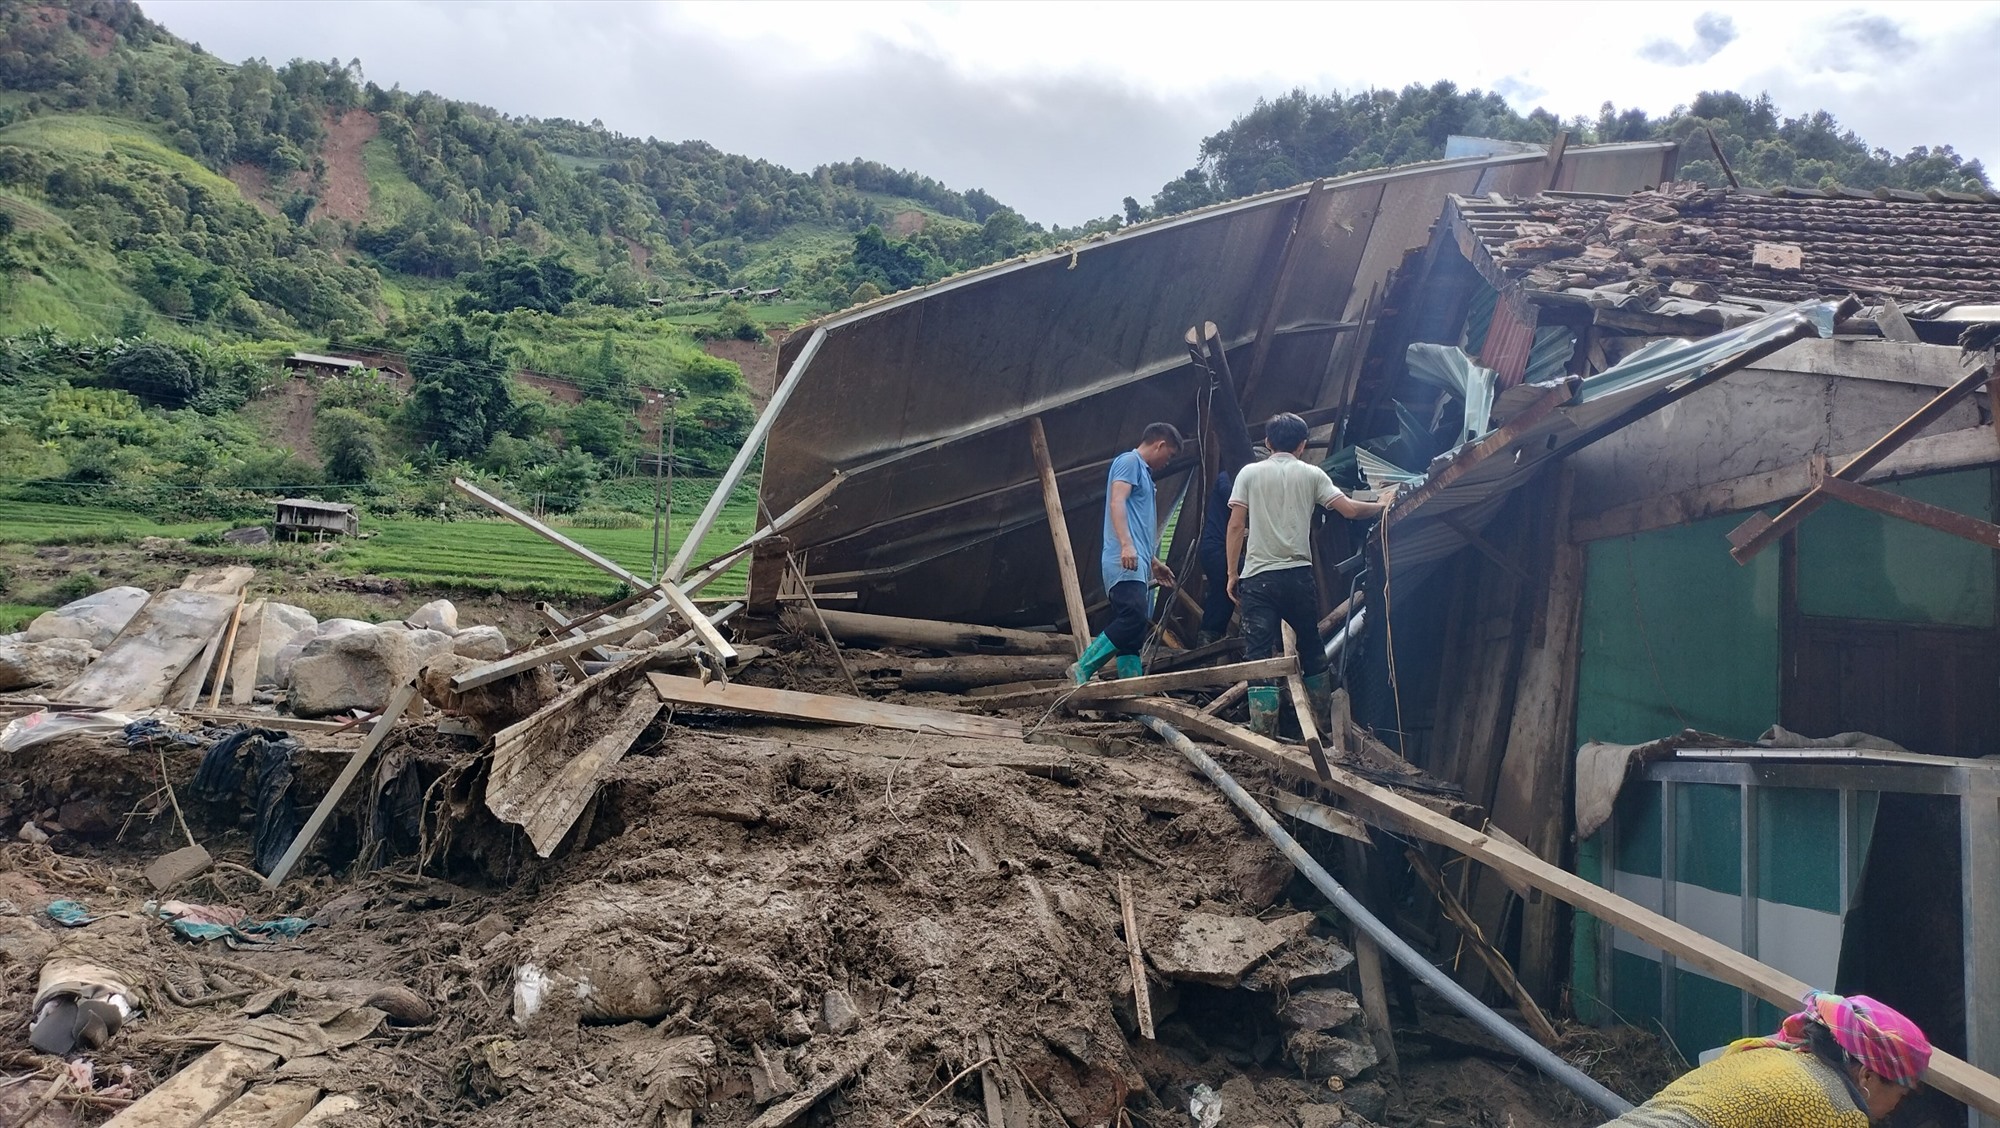 Đã có tổng số 189 nhà bị thiệt hại, tập trung chủ yếu ở huyện Mù Cang Chải; trong đó, 51 nhà sập, trôi hoàn toàn, 123 nhà thiệt hại nặng, 15 nhà phải di dời khẩn cấp.